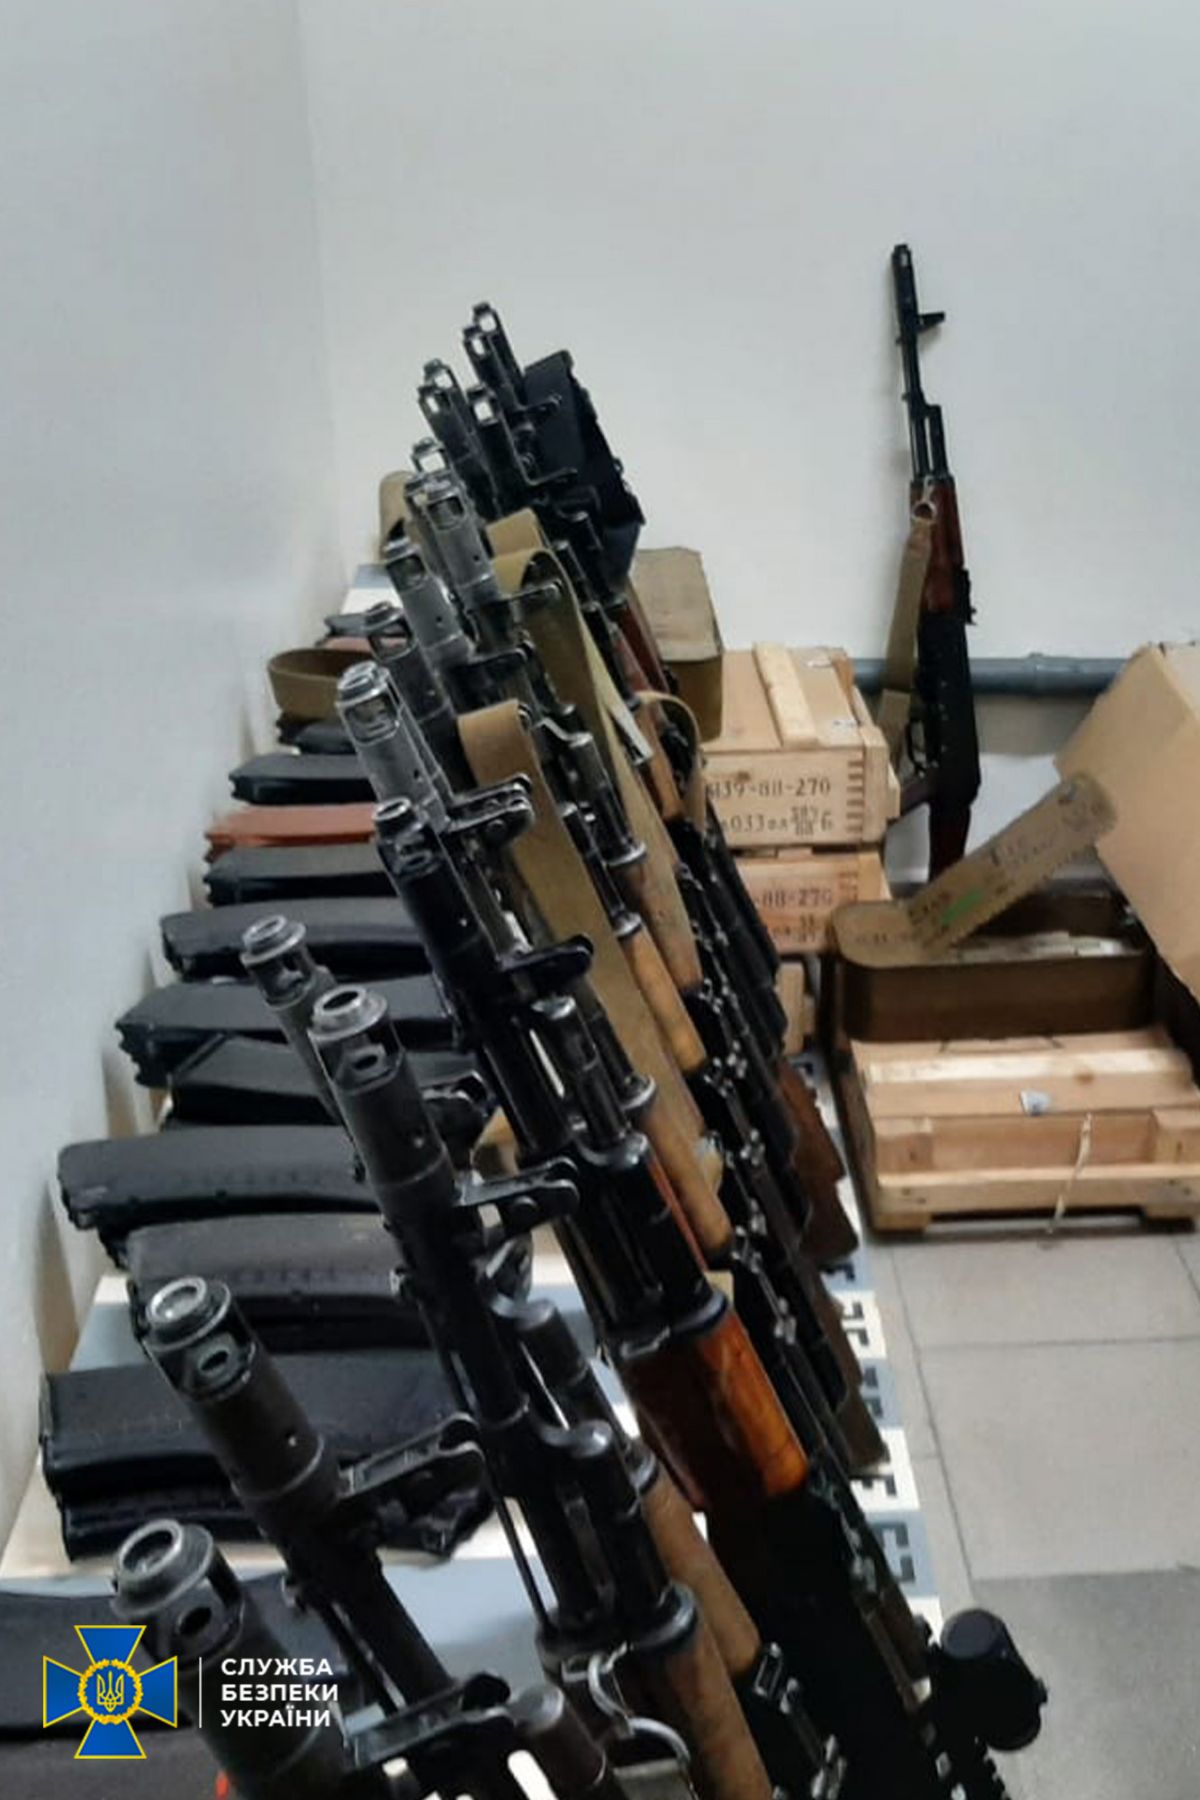 арсенал незарегистрированного оружия в Киеве на фото 1